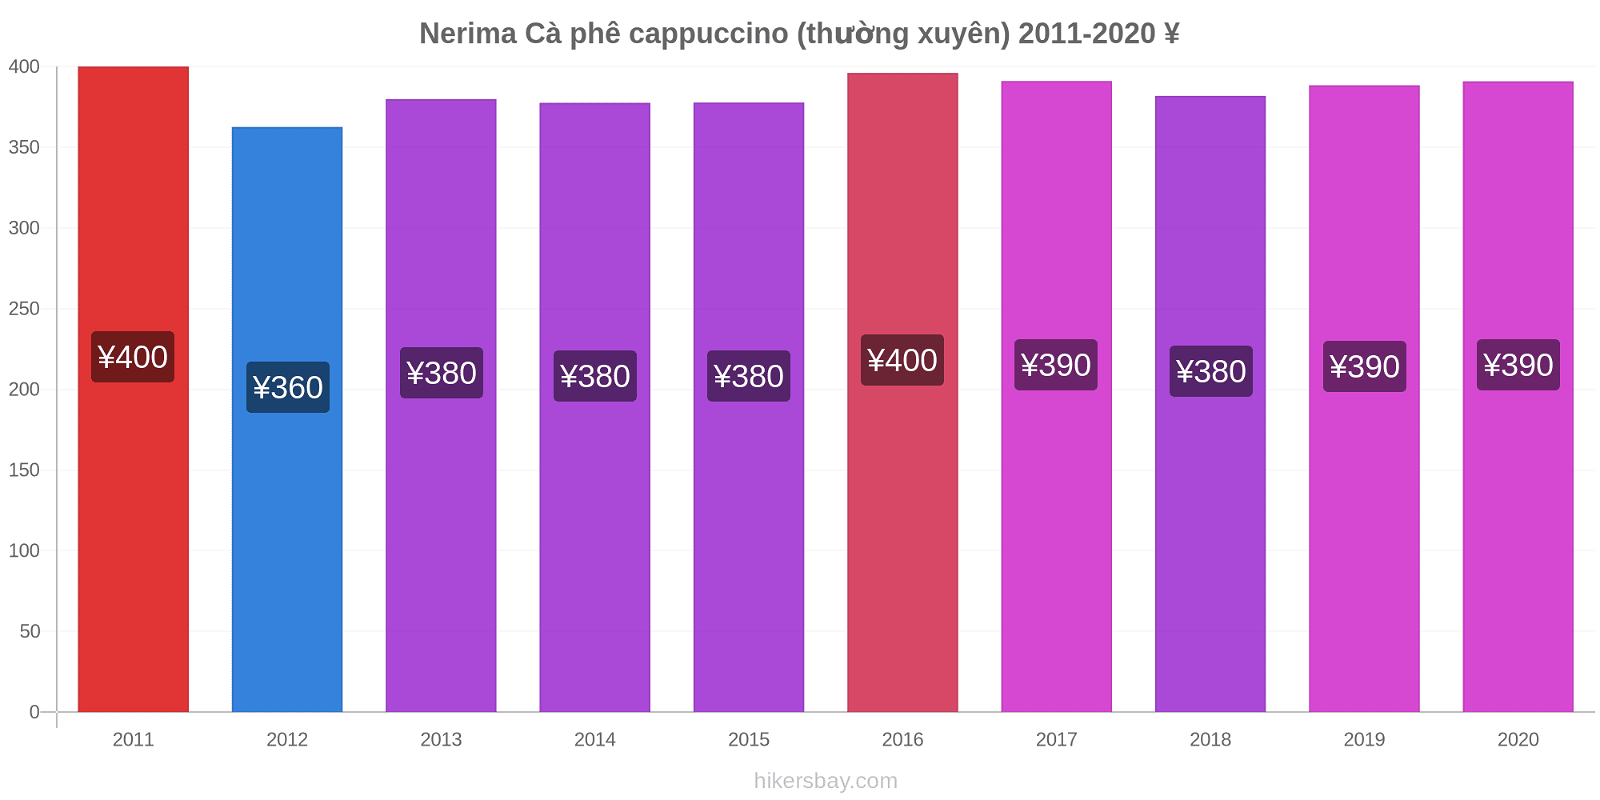 Nerima thay đổi giá Cà phê cappuccino (thường xuyên) hikersbay.com